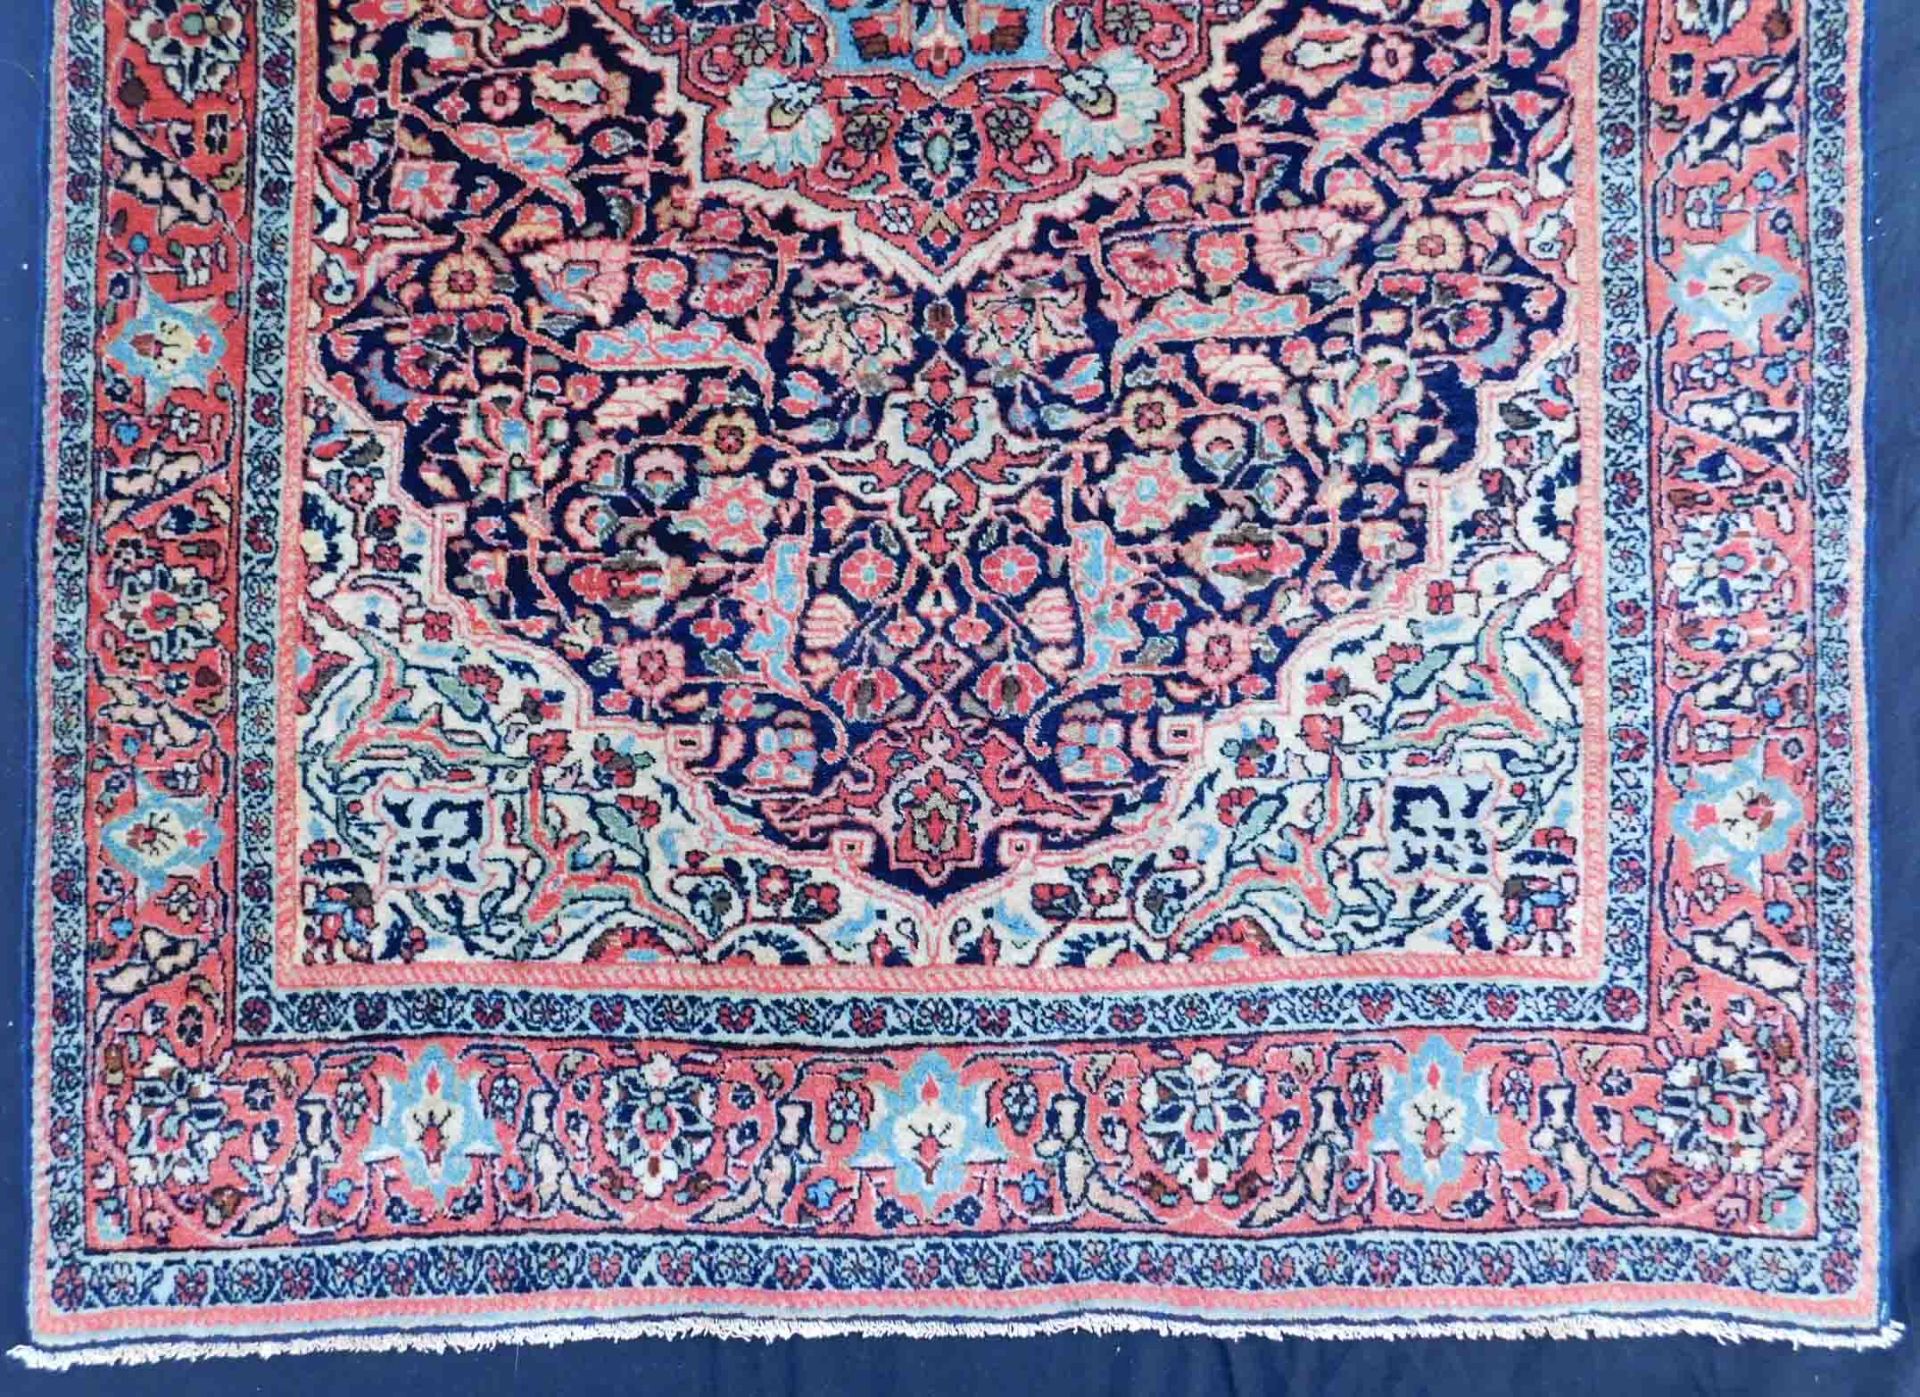 Djosan Persian carpet. Iran, about 90 - 110 years old. - Bild 2 aus 6